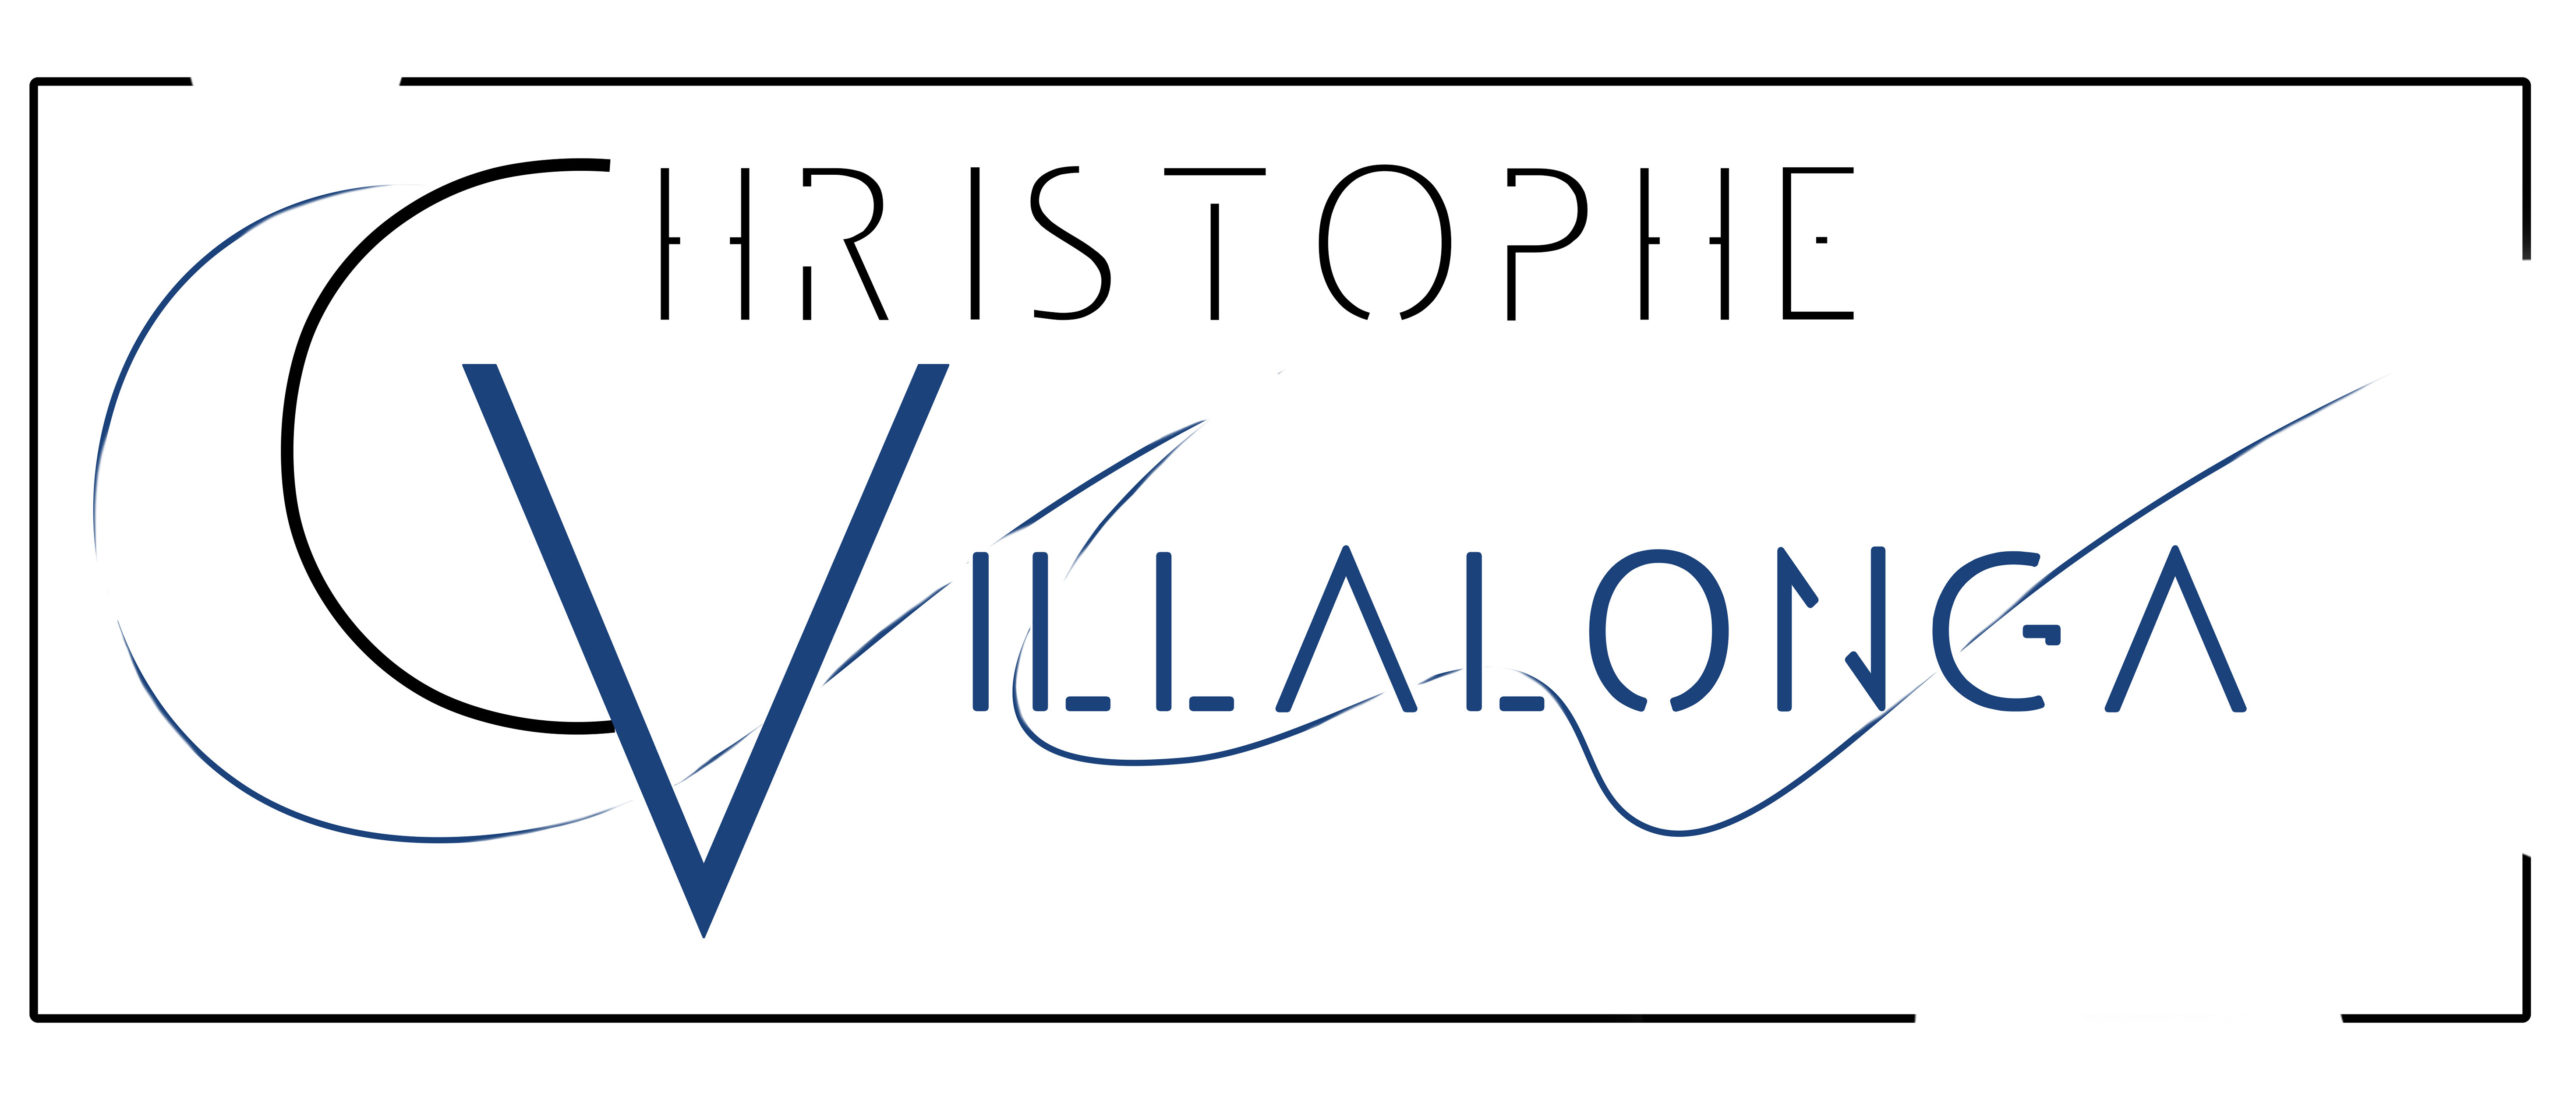 Conseiller Système de management à Lyon Christophe Villalonga